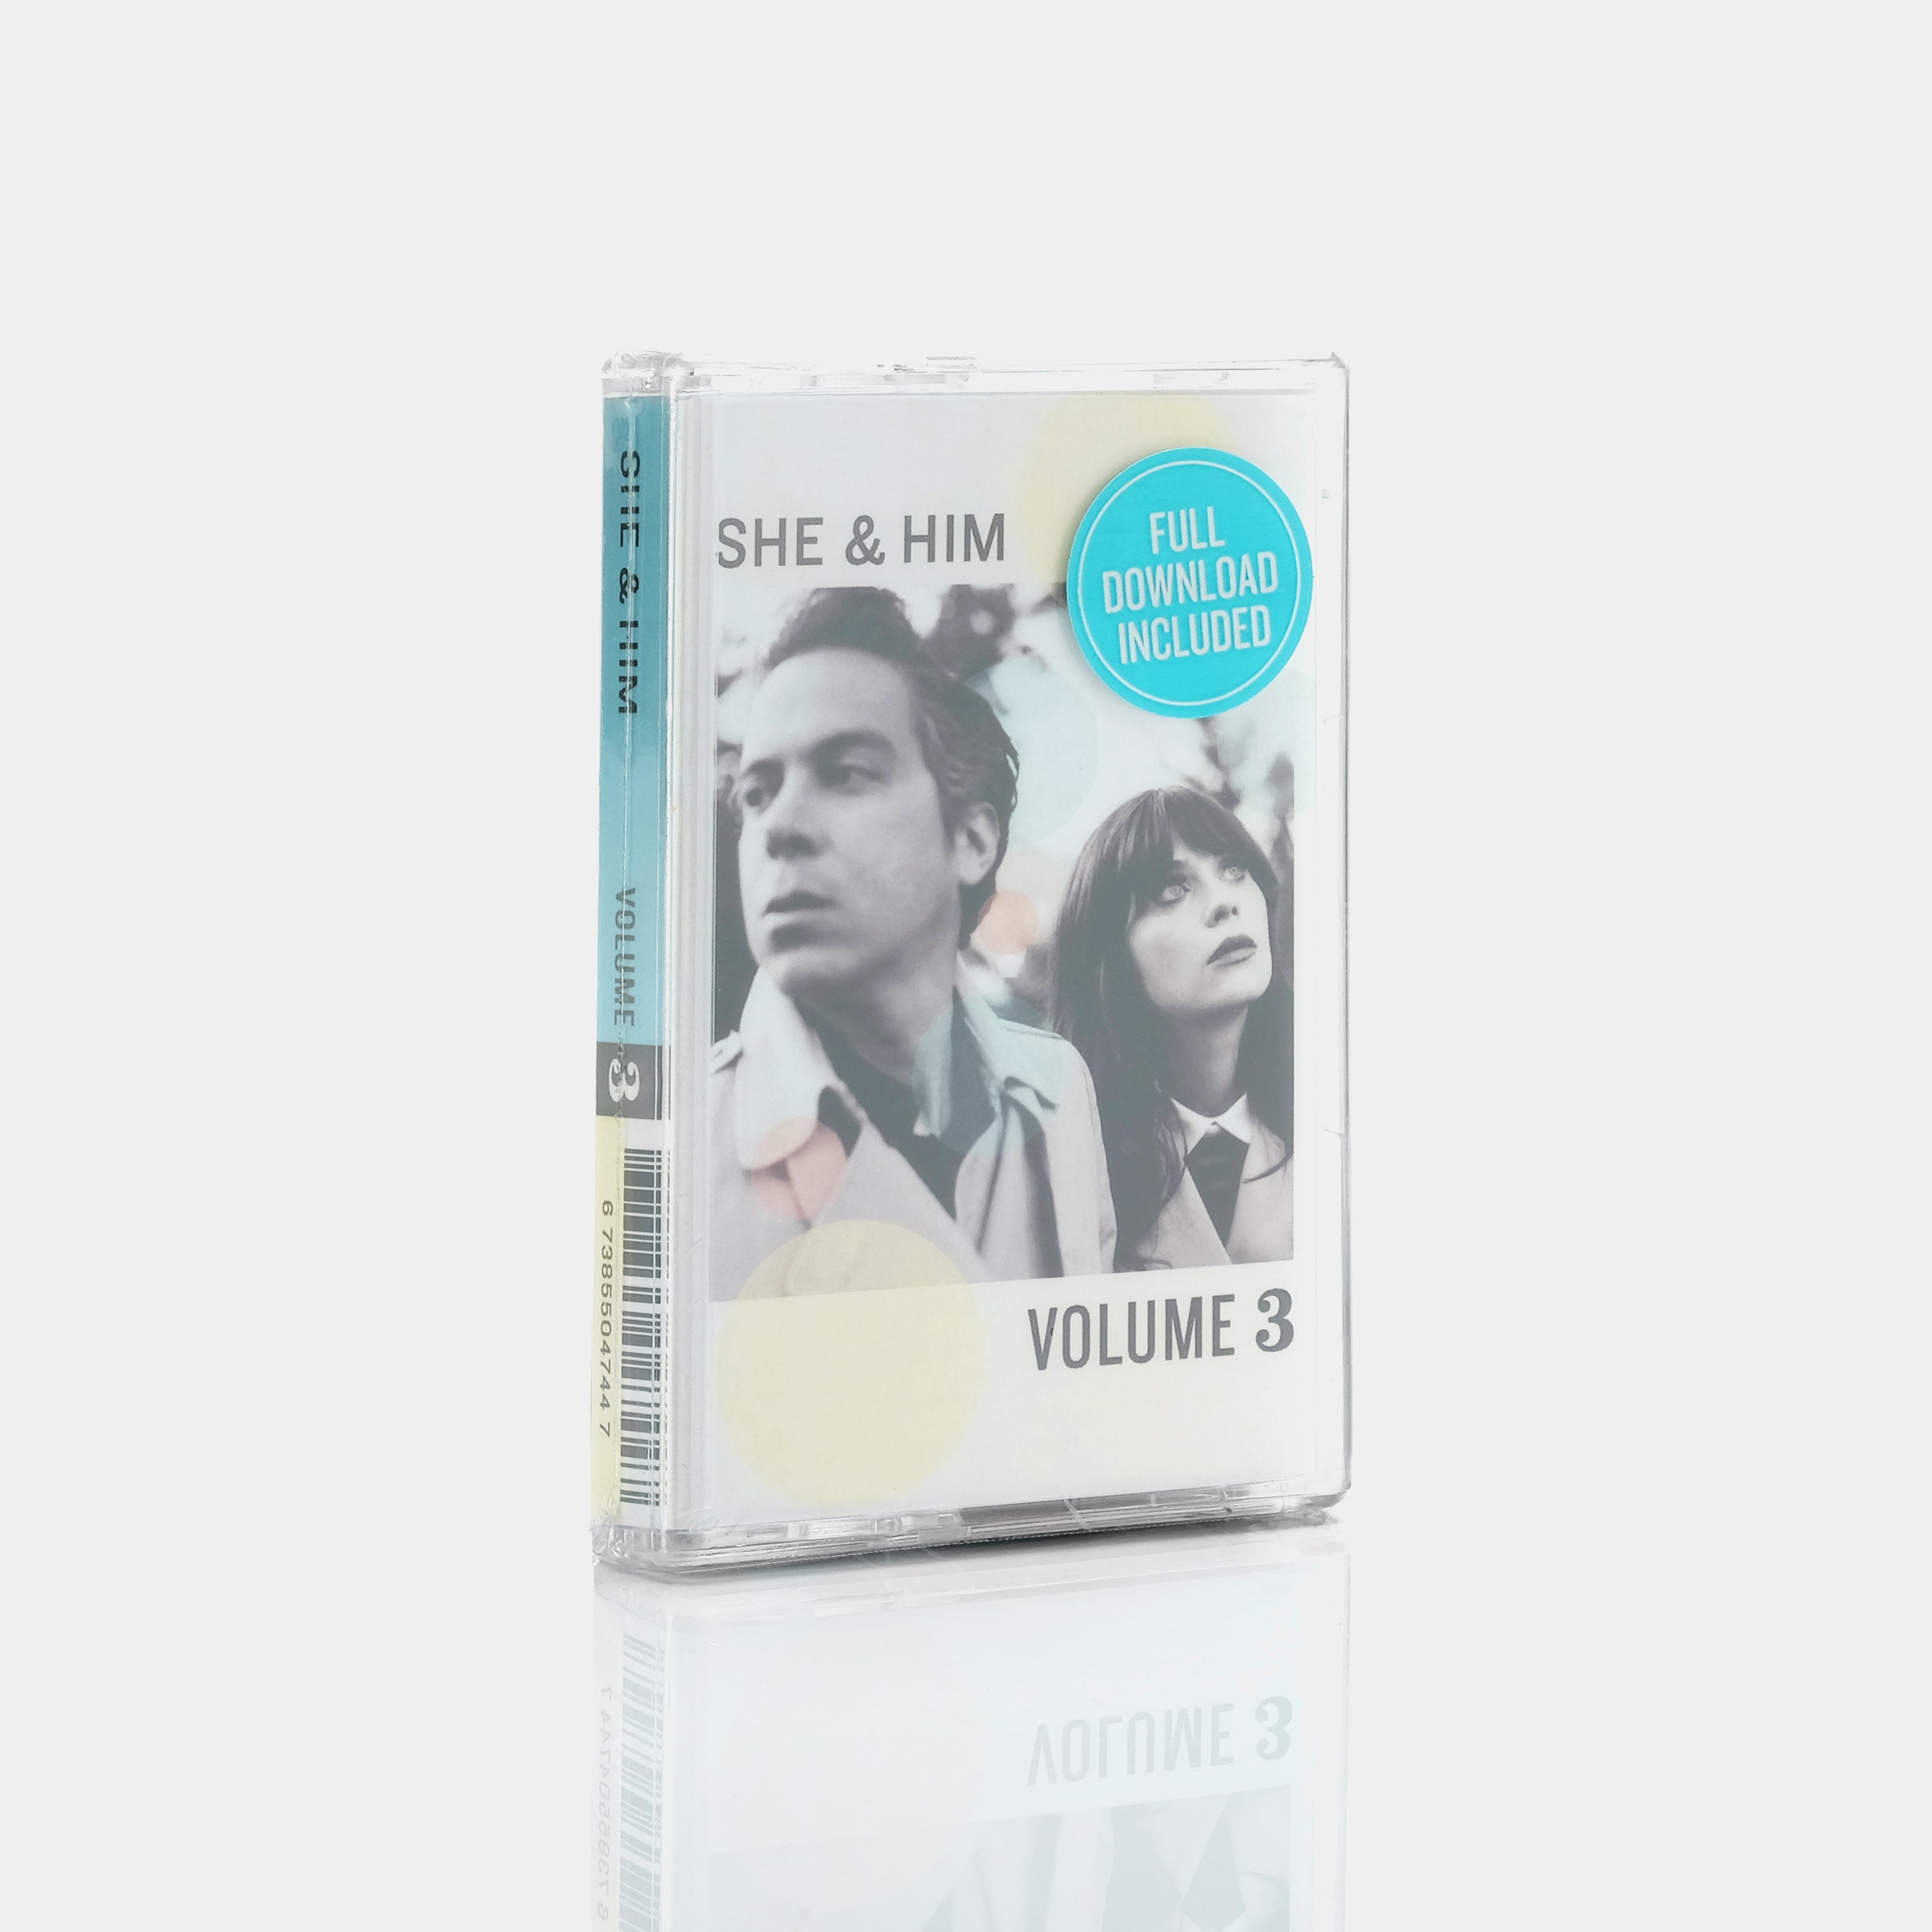 She & Him - Volume 3 Cassette Tape